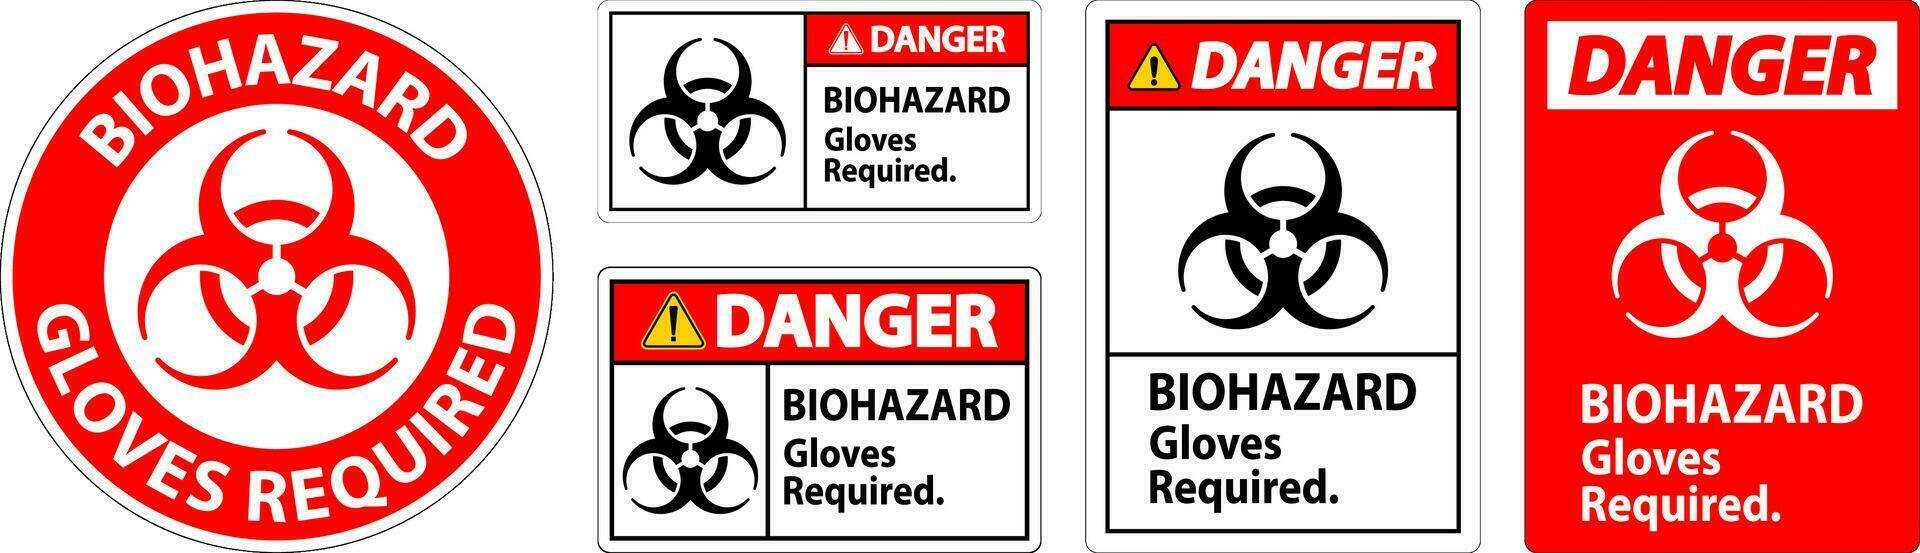 rischio biologico Pericolo etichetta rischio biologico guanti necessario vettore